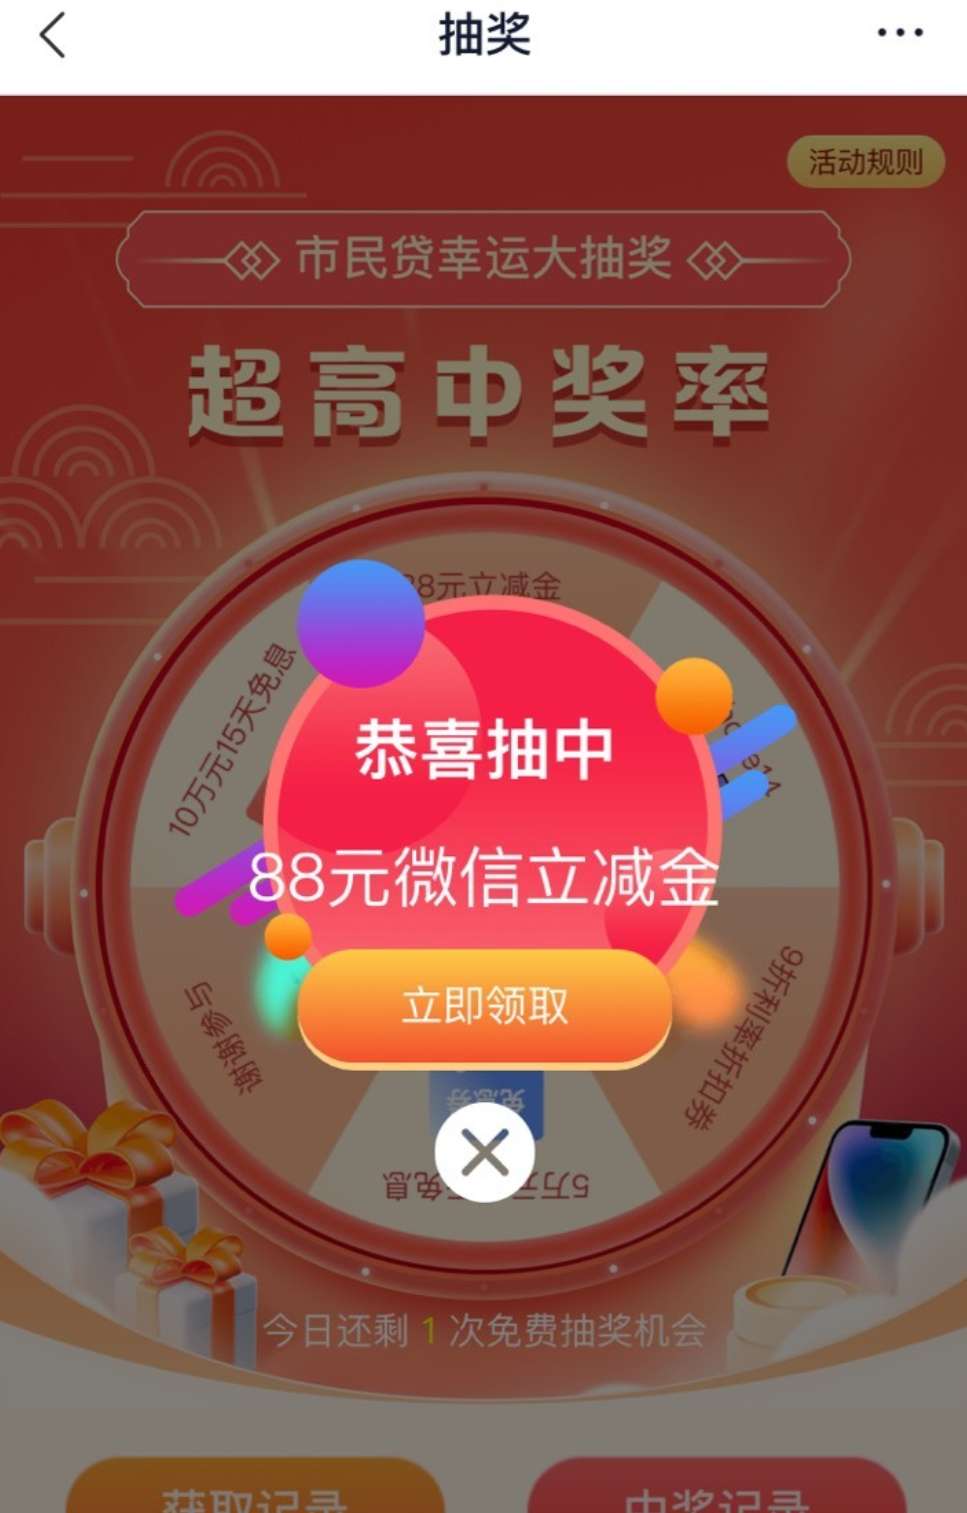 江苏苏宁银行（88+2.88）不必中_福利红包